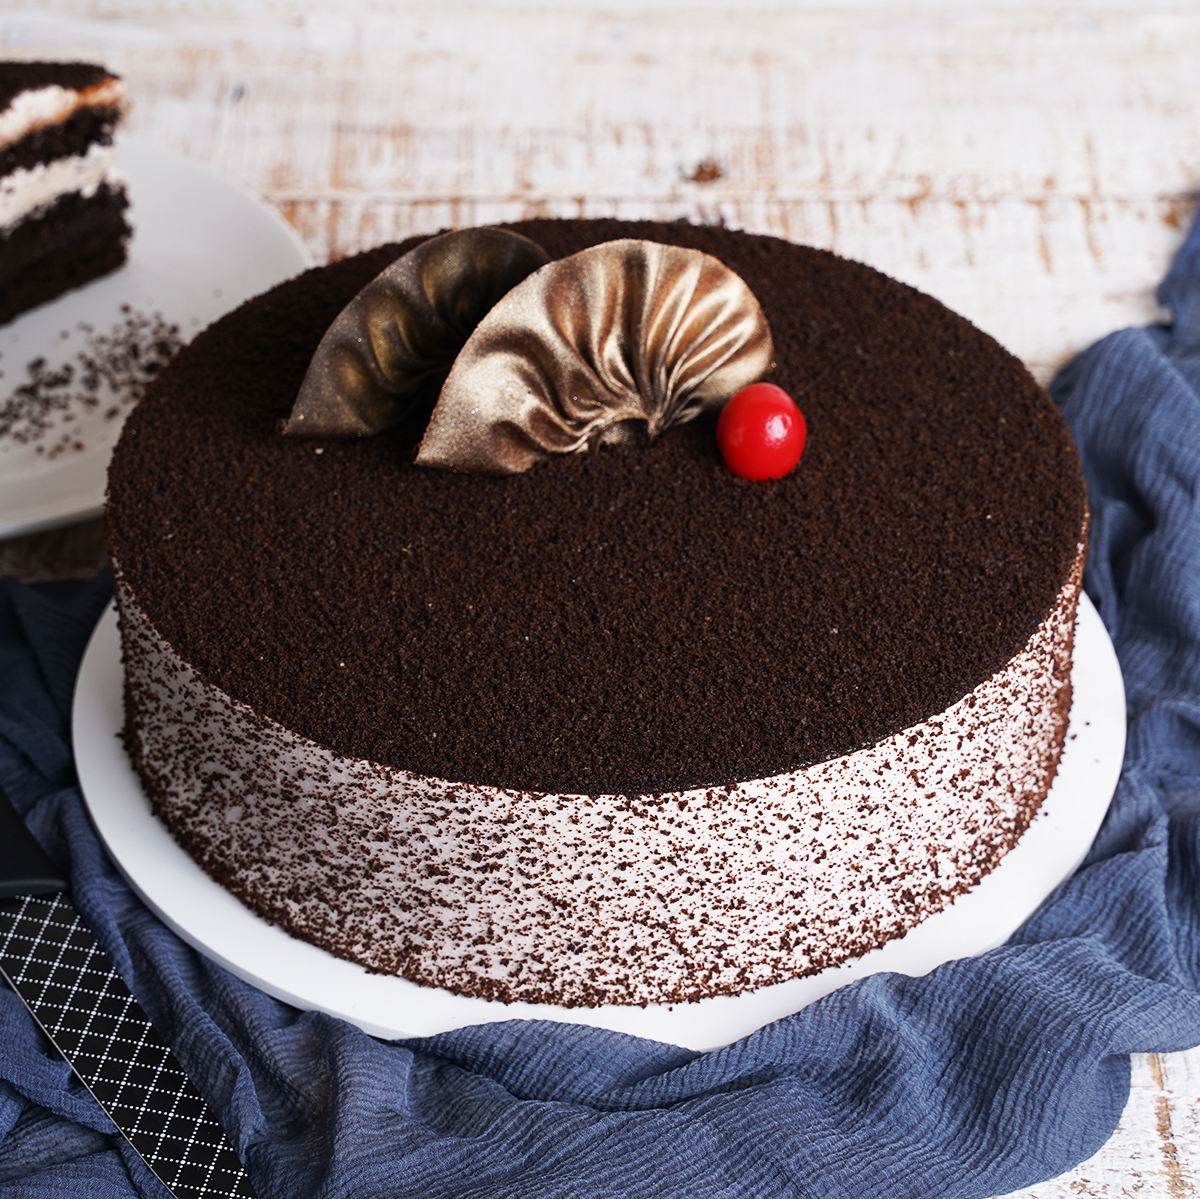 Oreo Chocolate Mousse Cake | No-Bake Chocolate Mousse Cake Recipe - YouTube-mncb.edu.vn